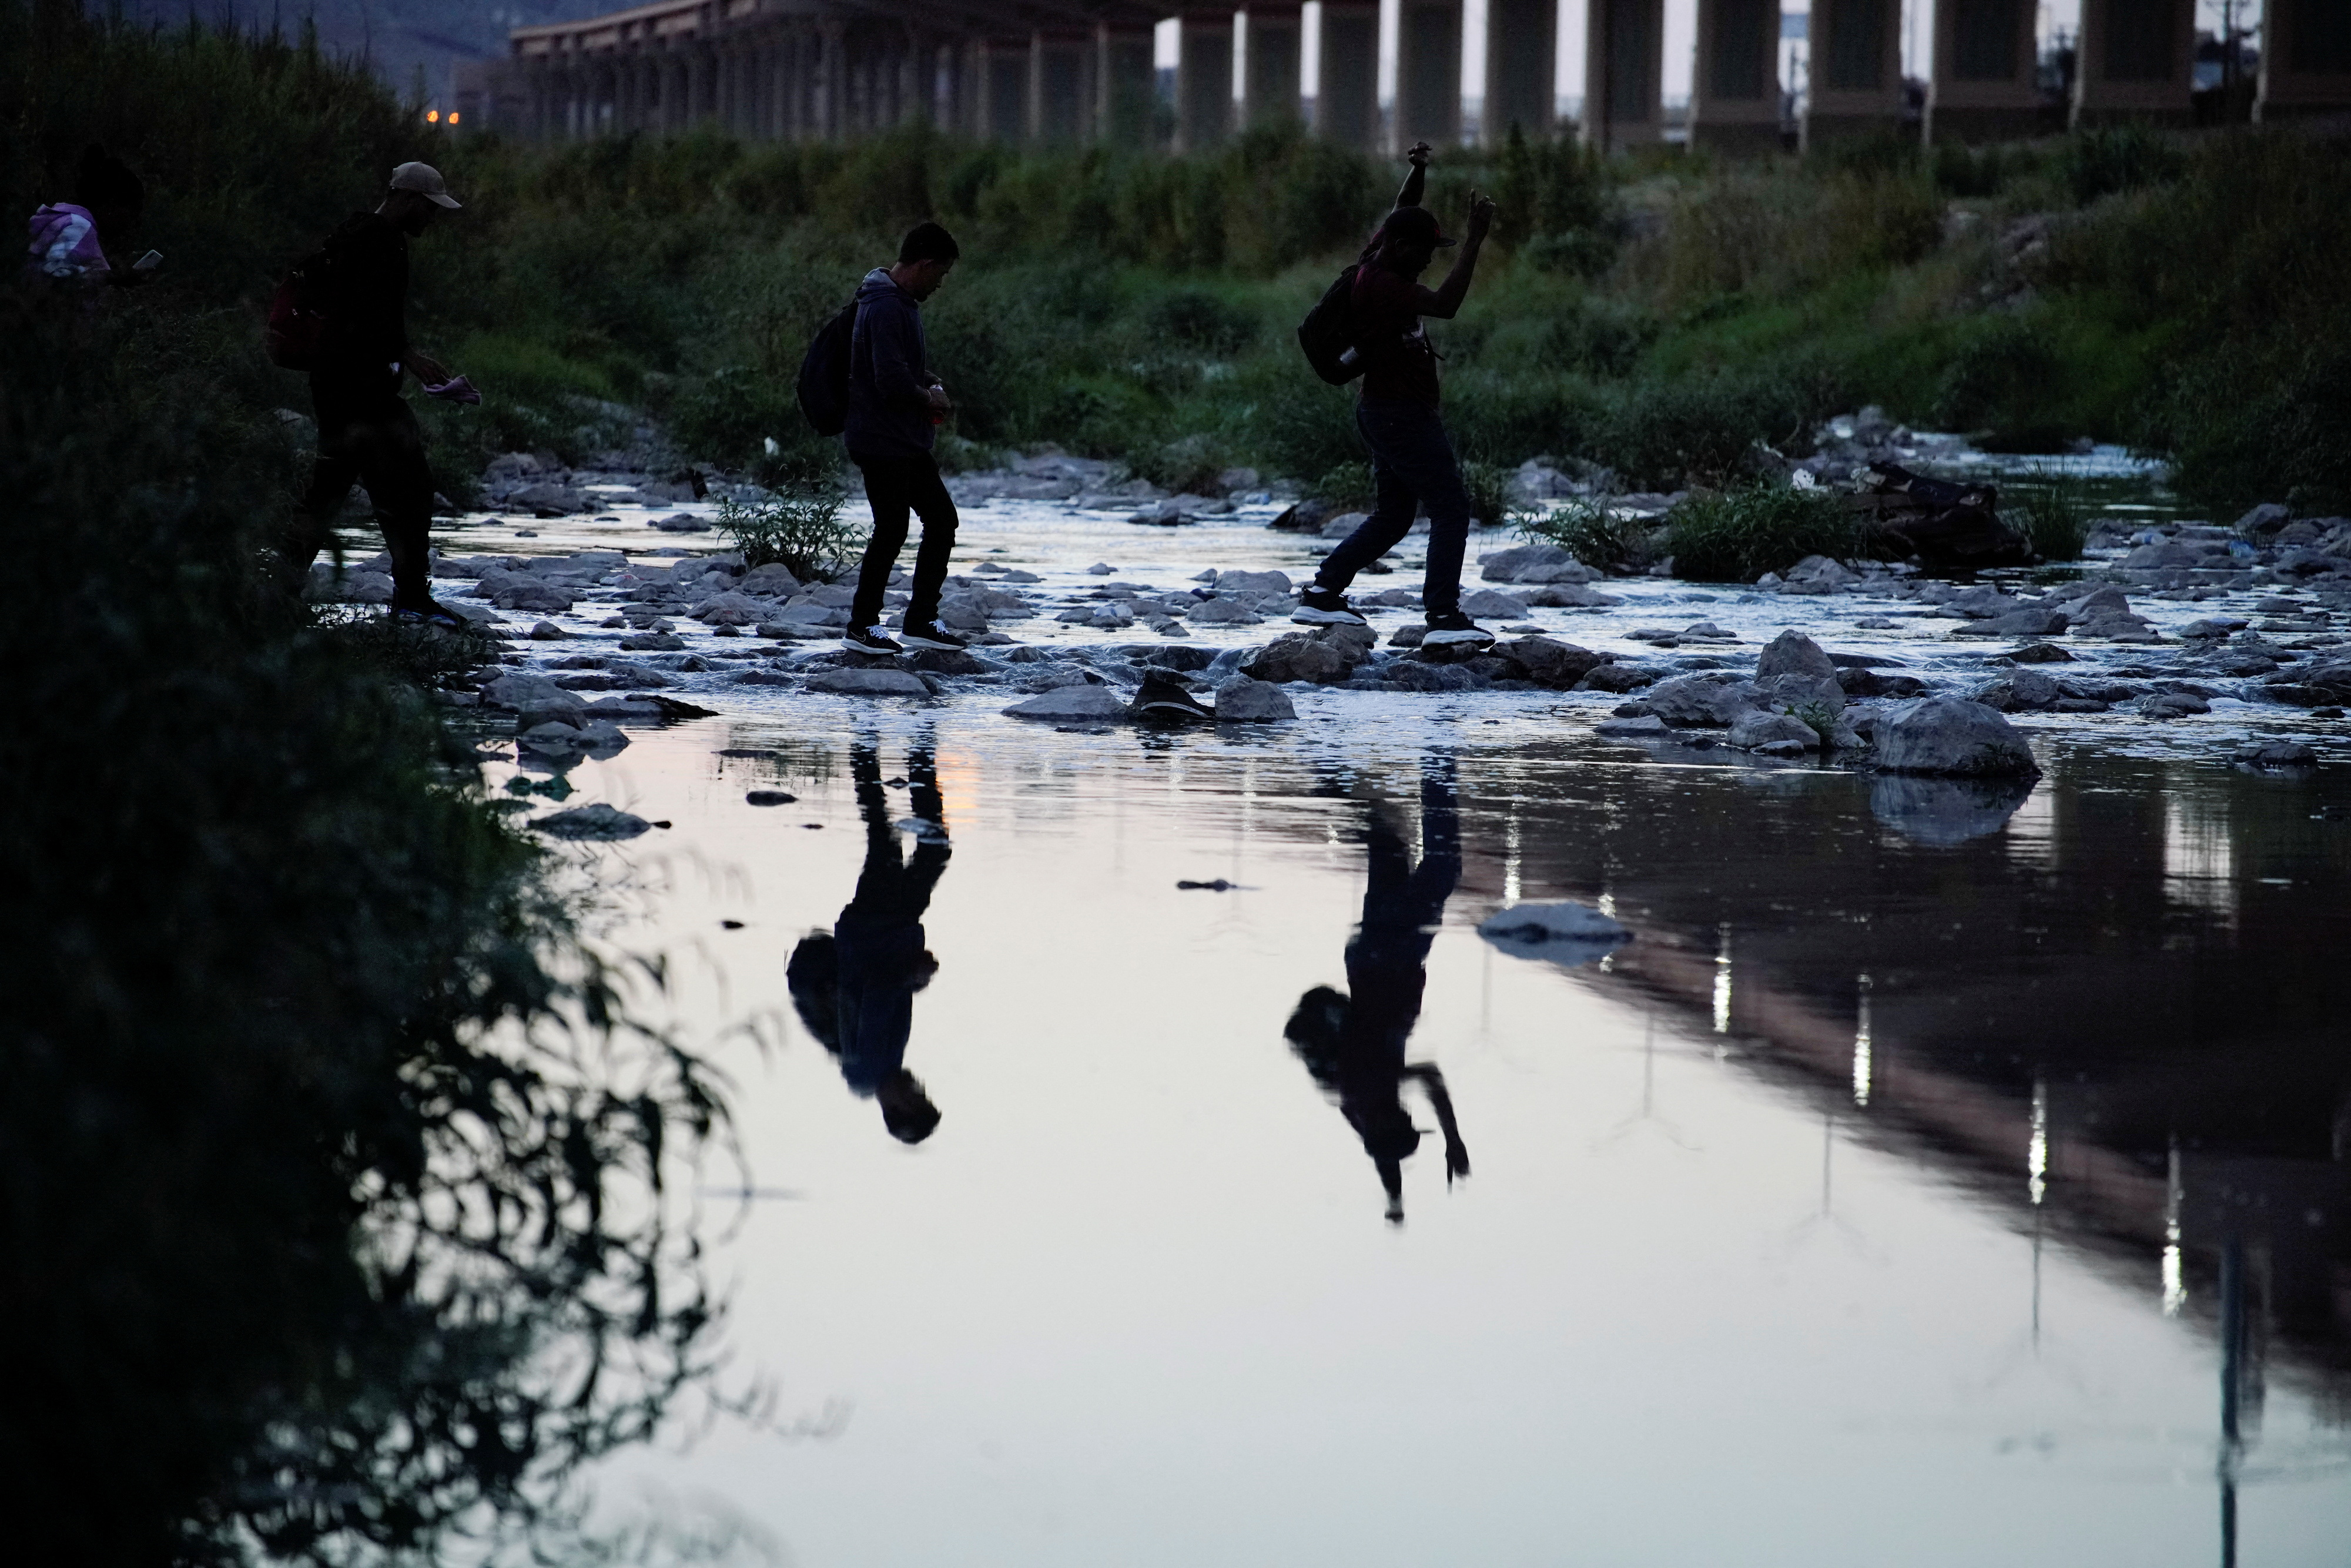 Imagen de referencia de migrantes intentando llegar a EEUU (Foto: REUTERS/Paul Ratje)